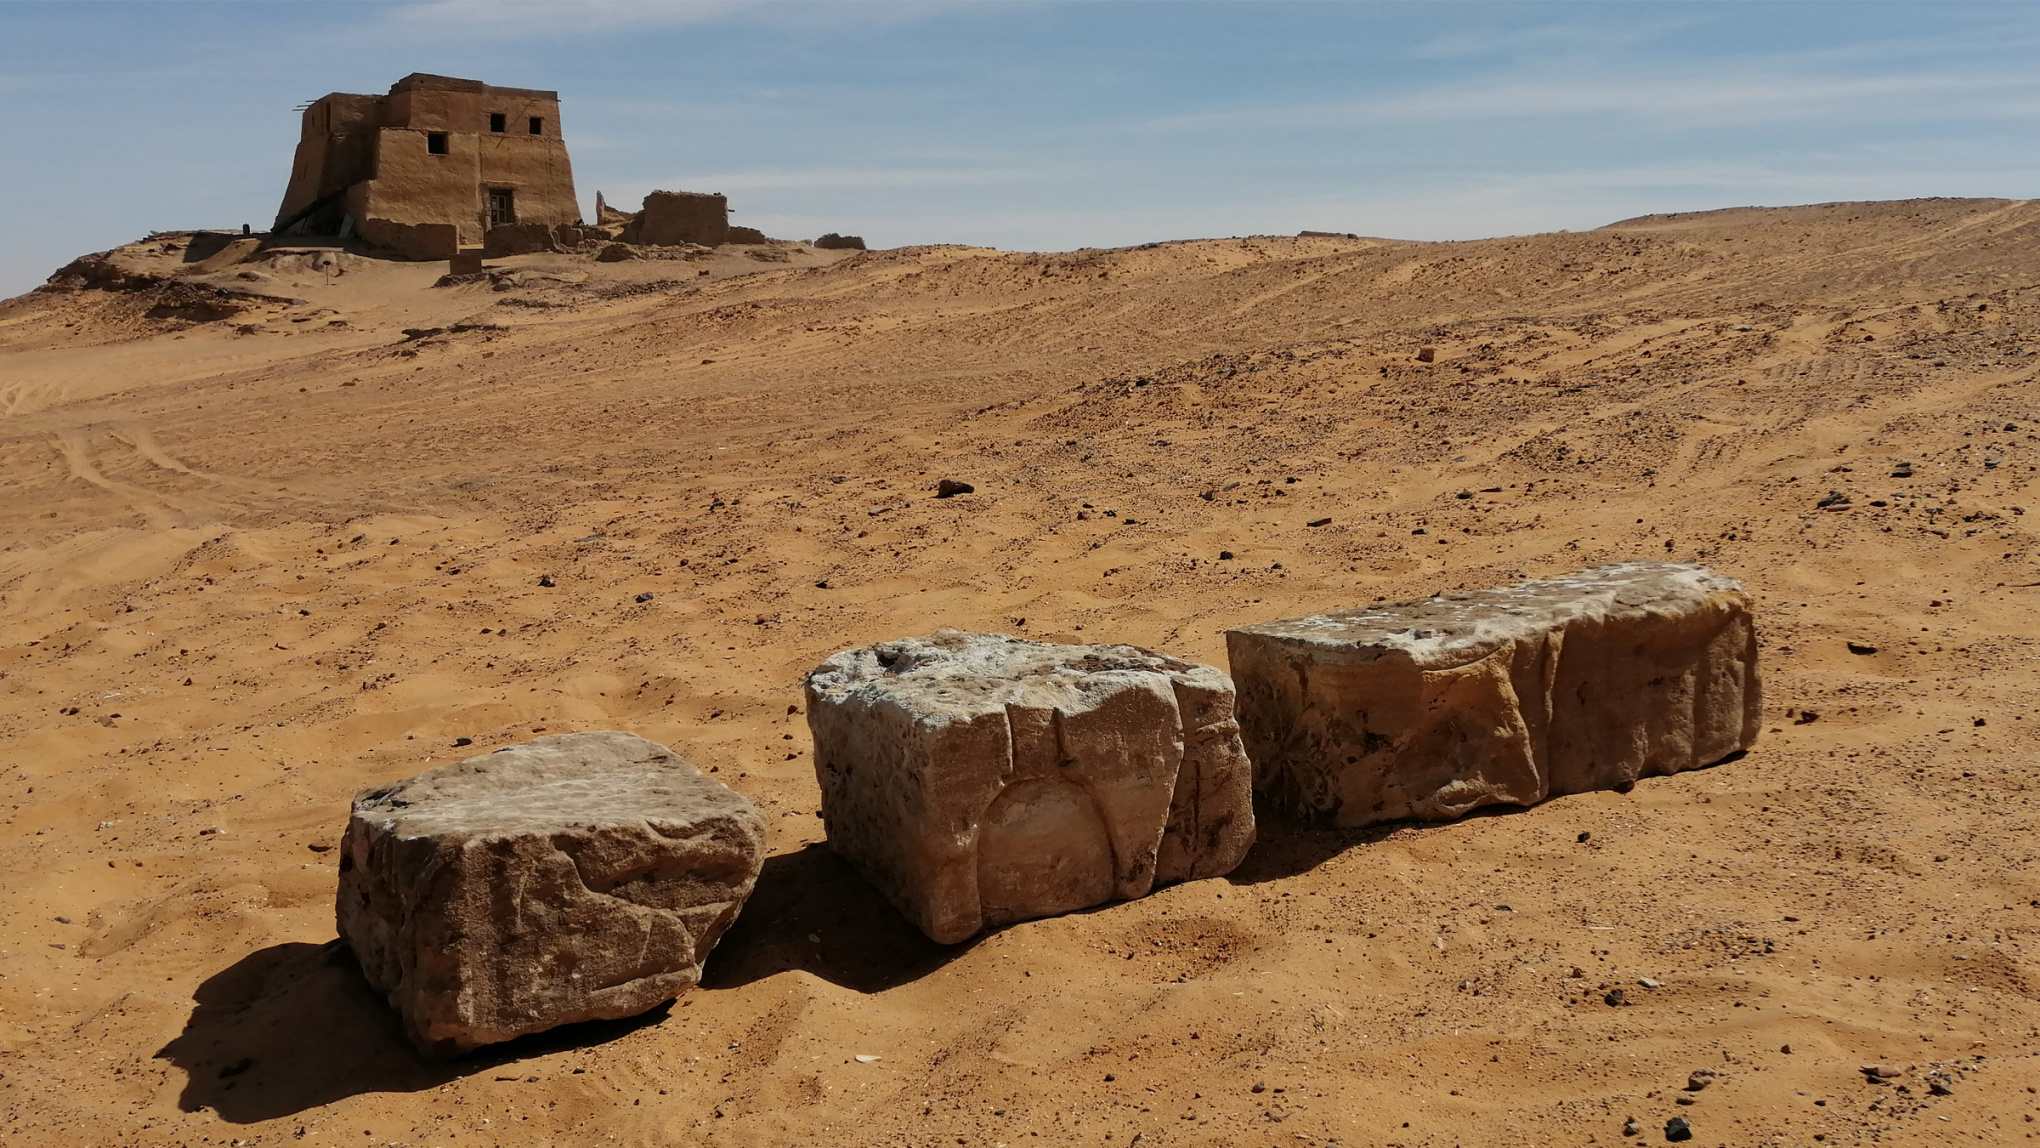 บล็อกโบราณที่มีจารึกอักษรอียิปต์โบราณถูกค้นพบในซูดาน